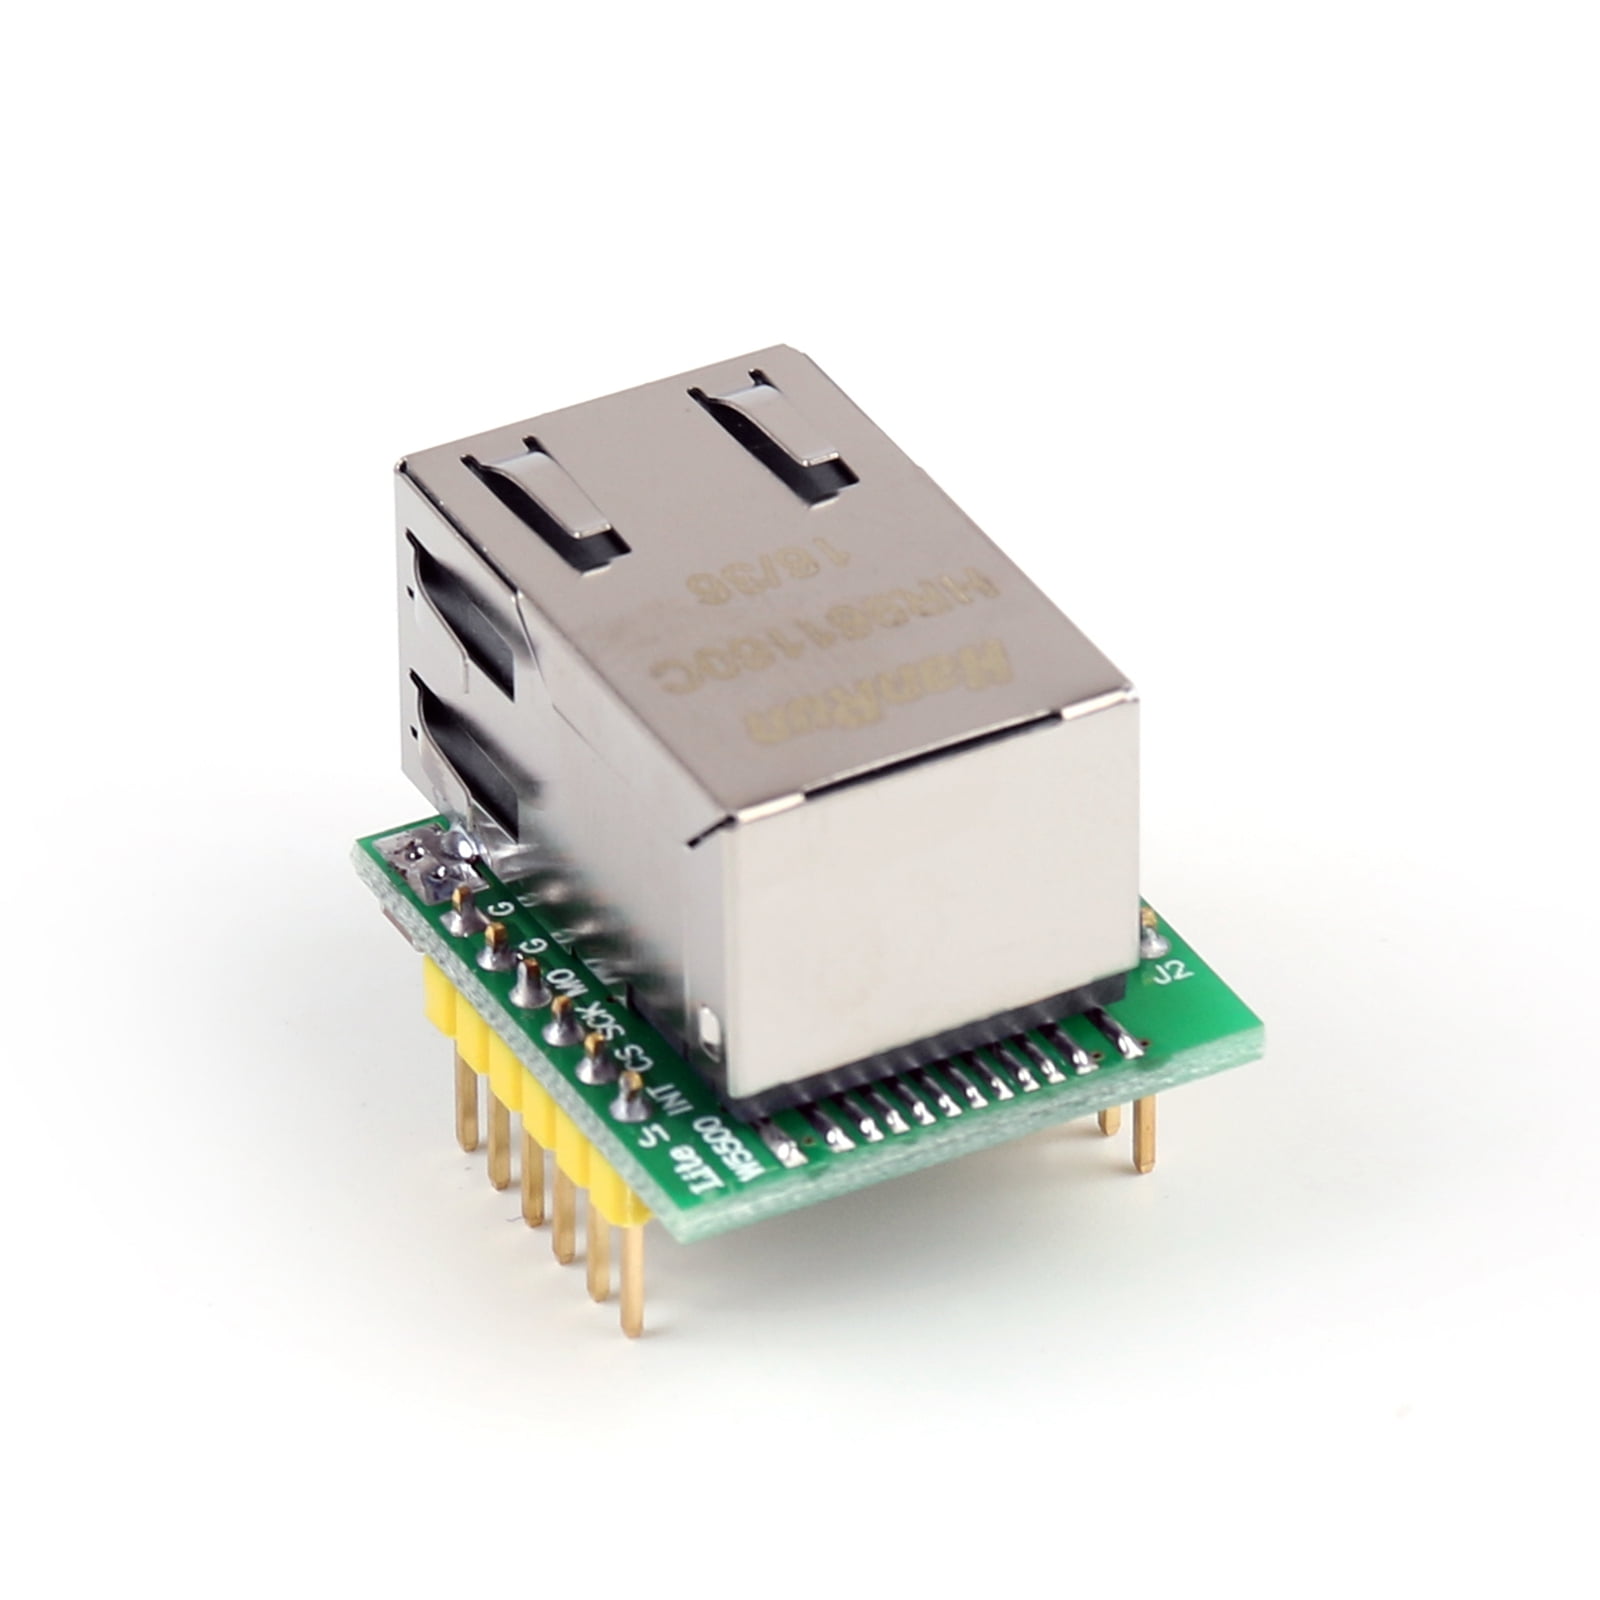 1Pcs HR961160C USR-ES1 W5500 Chip SPI to LAN/ Ethernet Converter TCP/IP Module U 